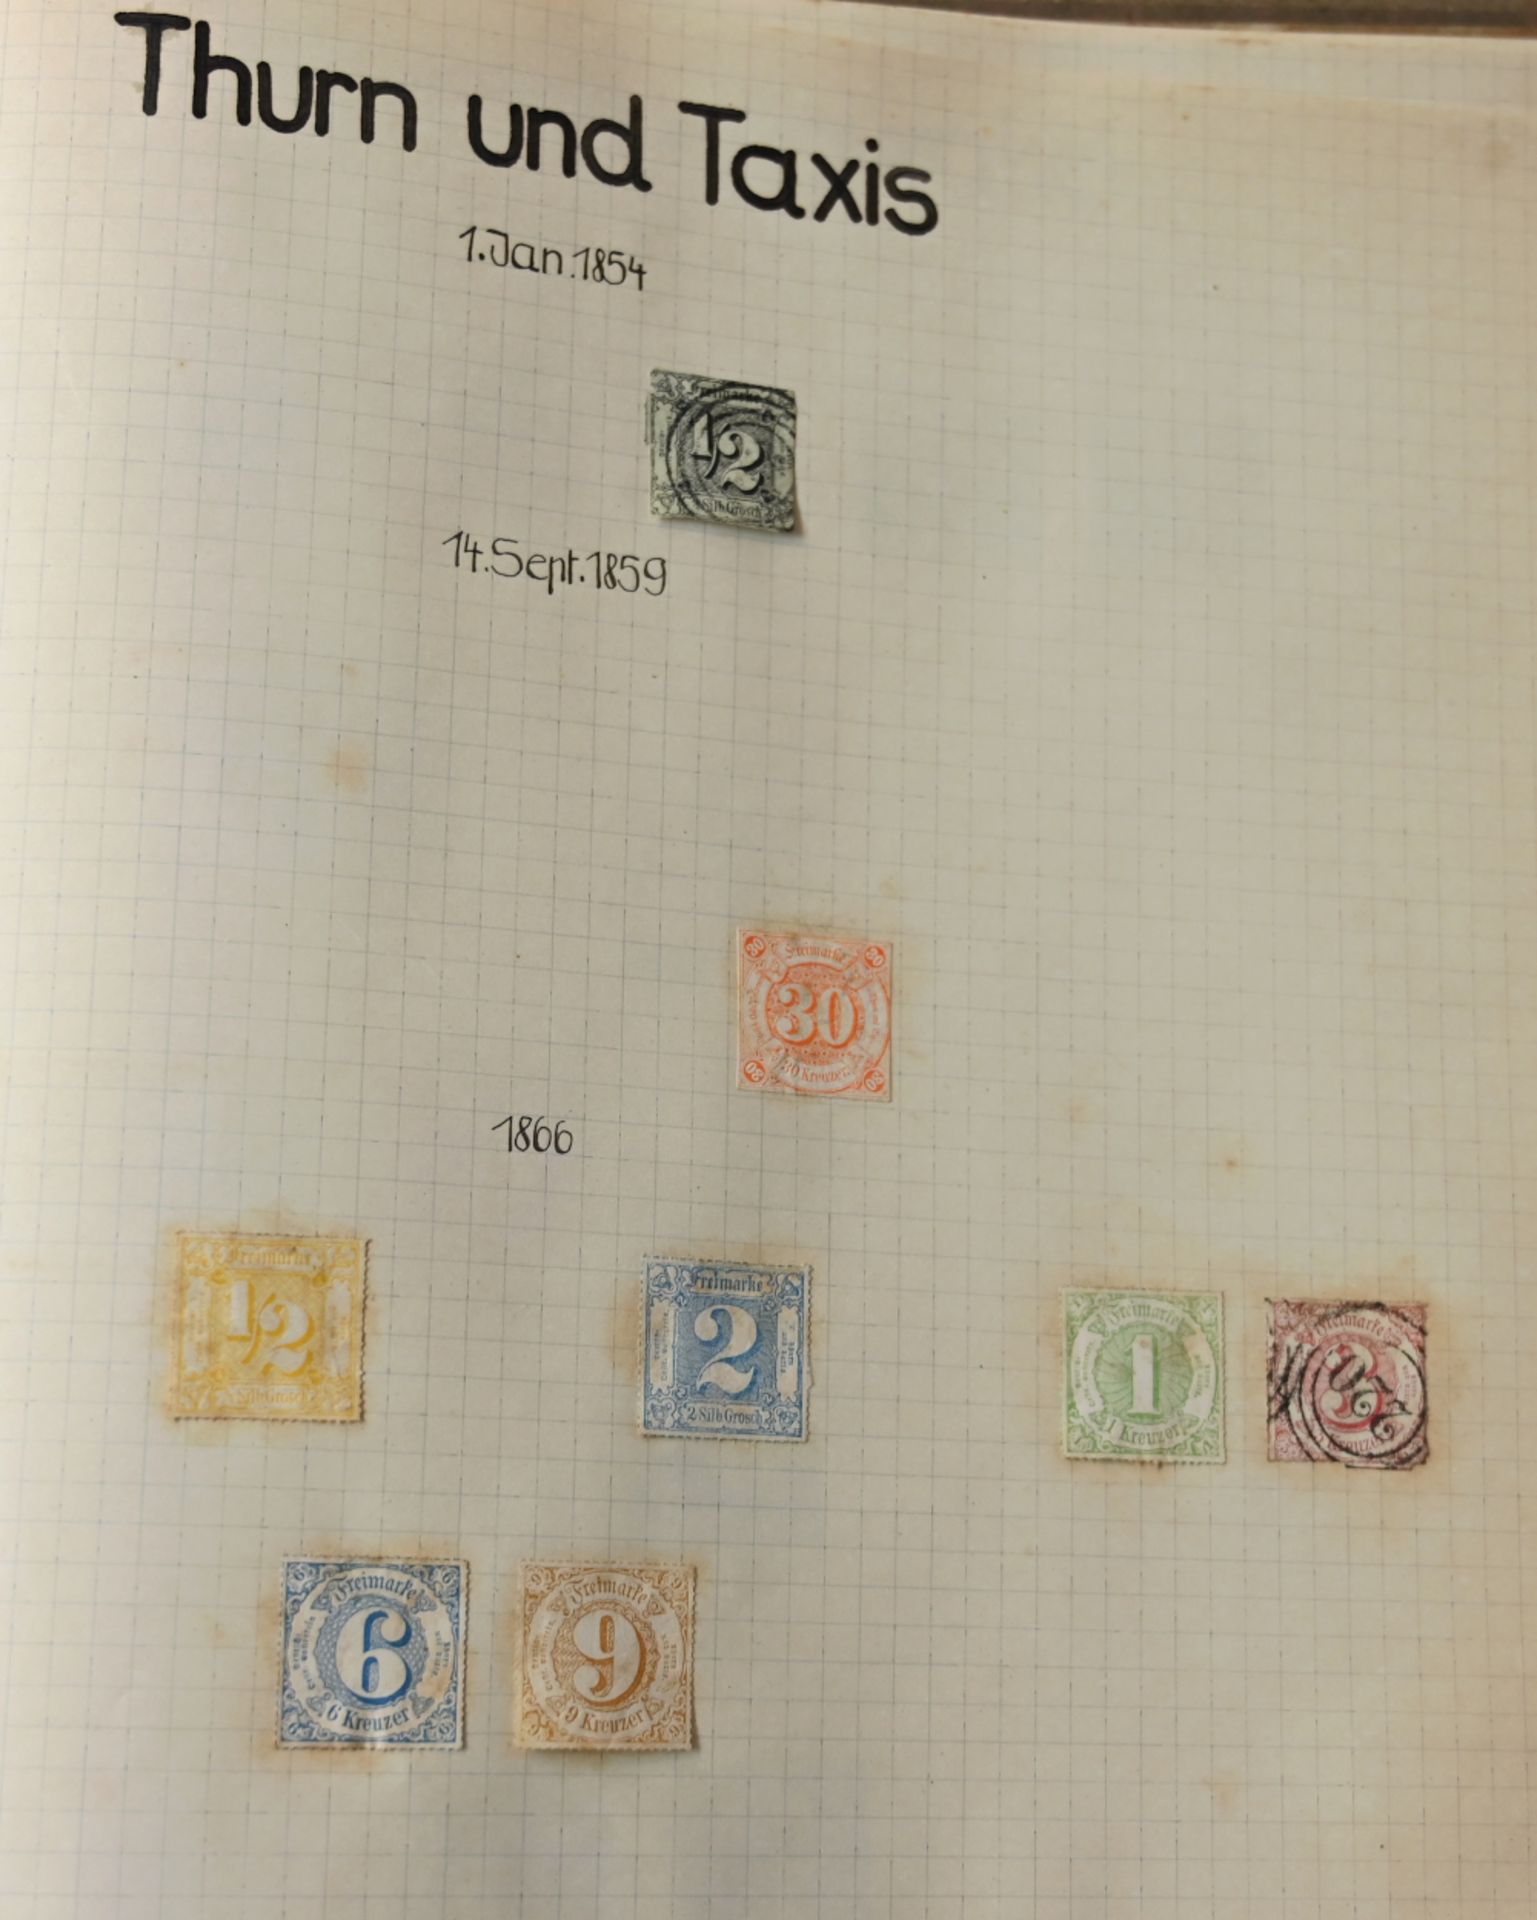 1 Sammlung Briefmarken in 9 Alben, Pappschubern, Schachteln z.T. lose - Bild 2 aus 4